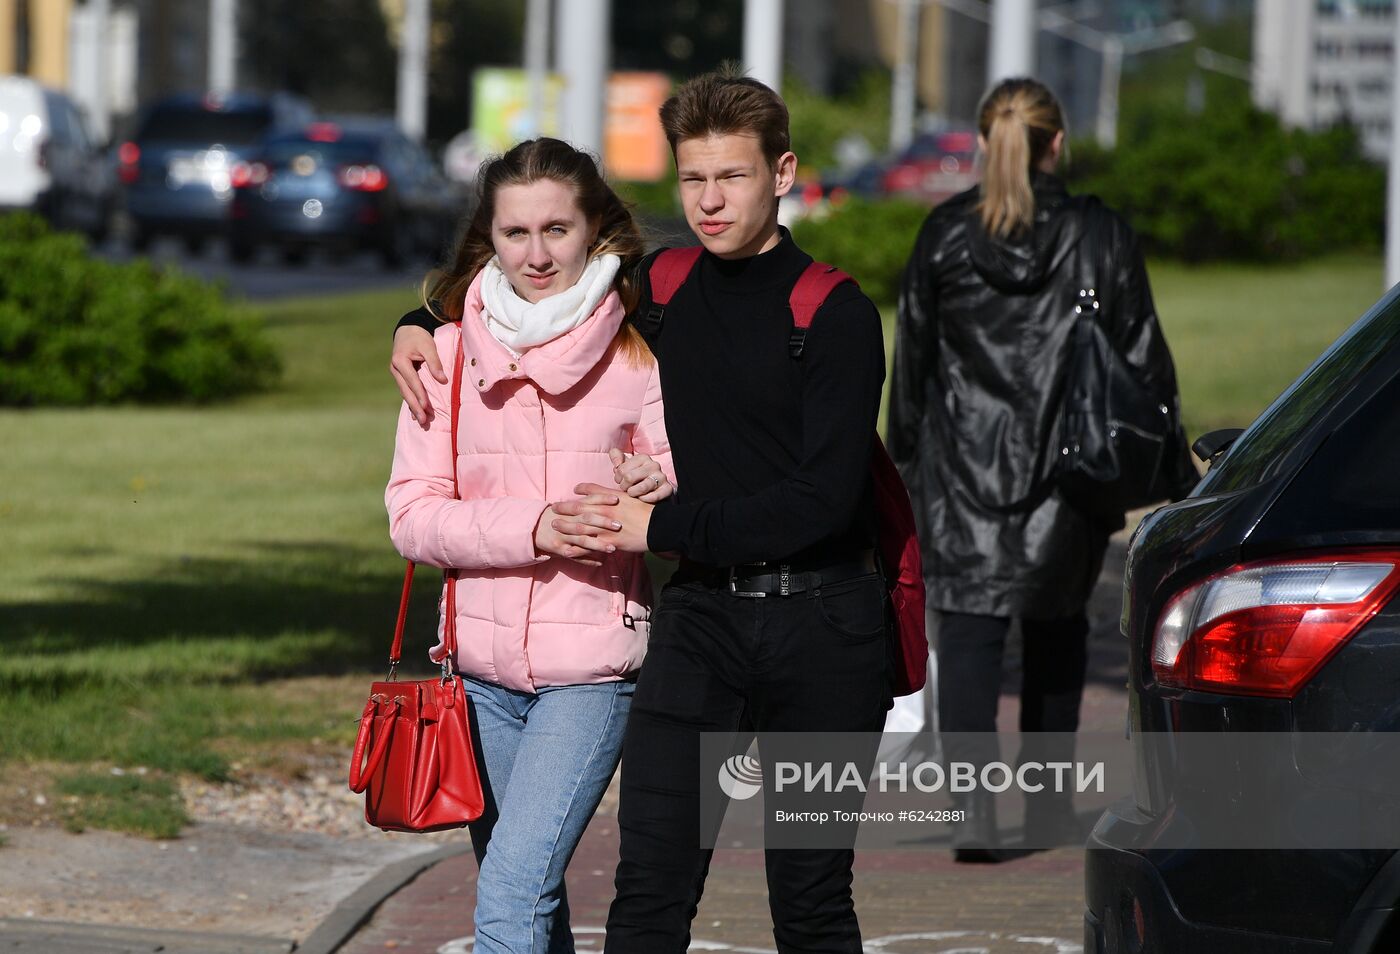 Ситуация в Минске в связи с коронавирусом